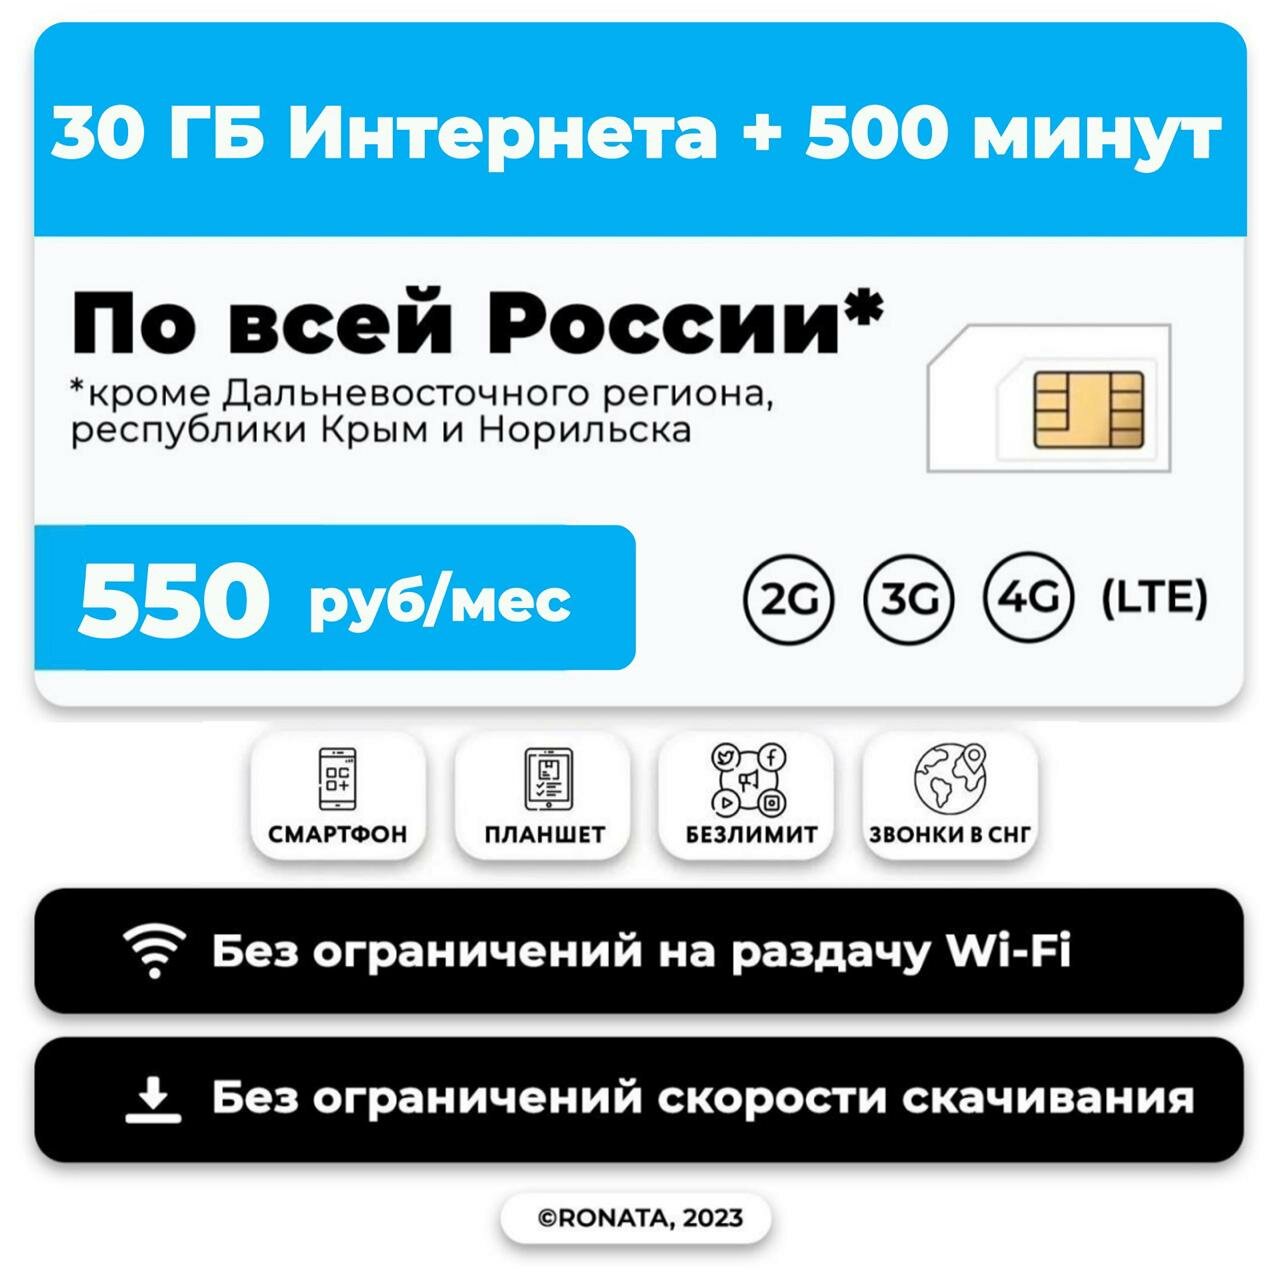 Тариф для планшета и смартфона 500 минут + 30 гб и + звонки в СНГ за 500 р/м + в тариф включена раздача